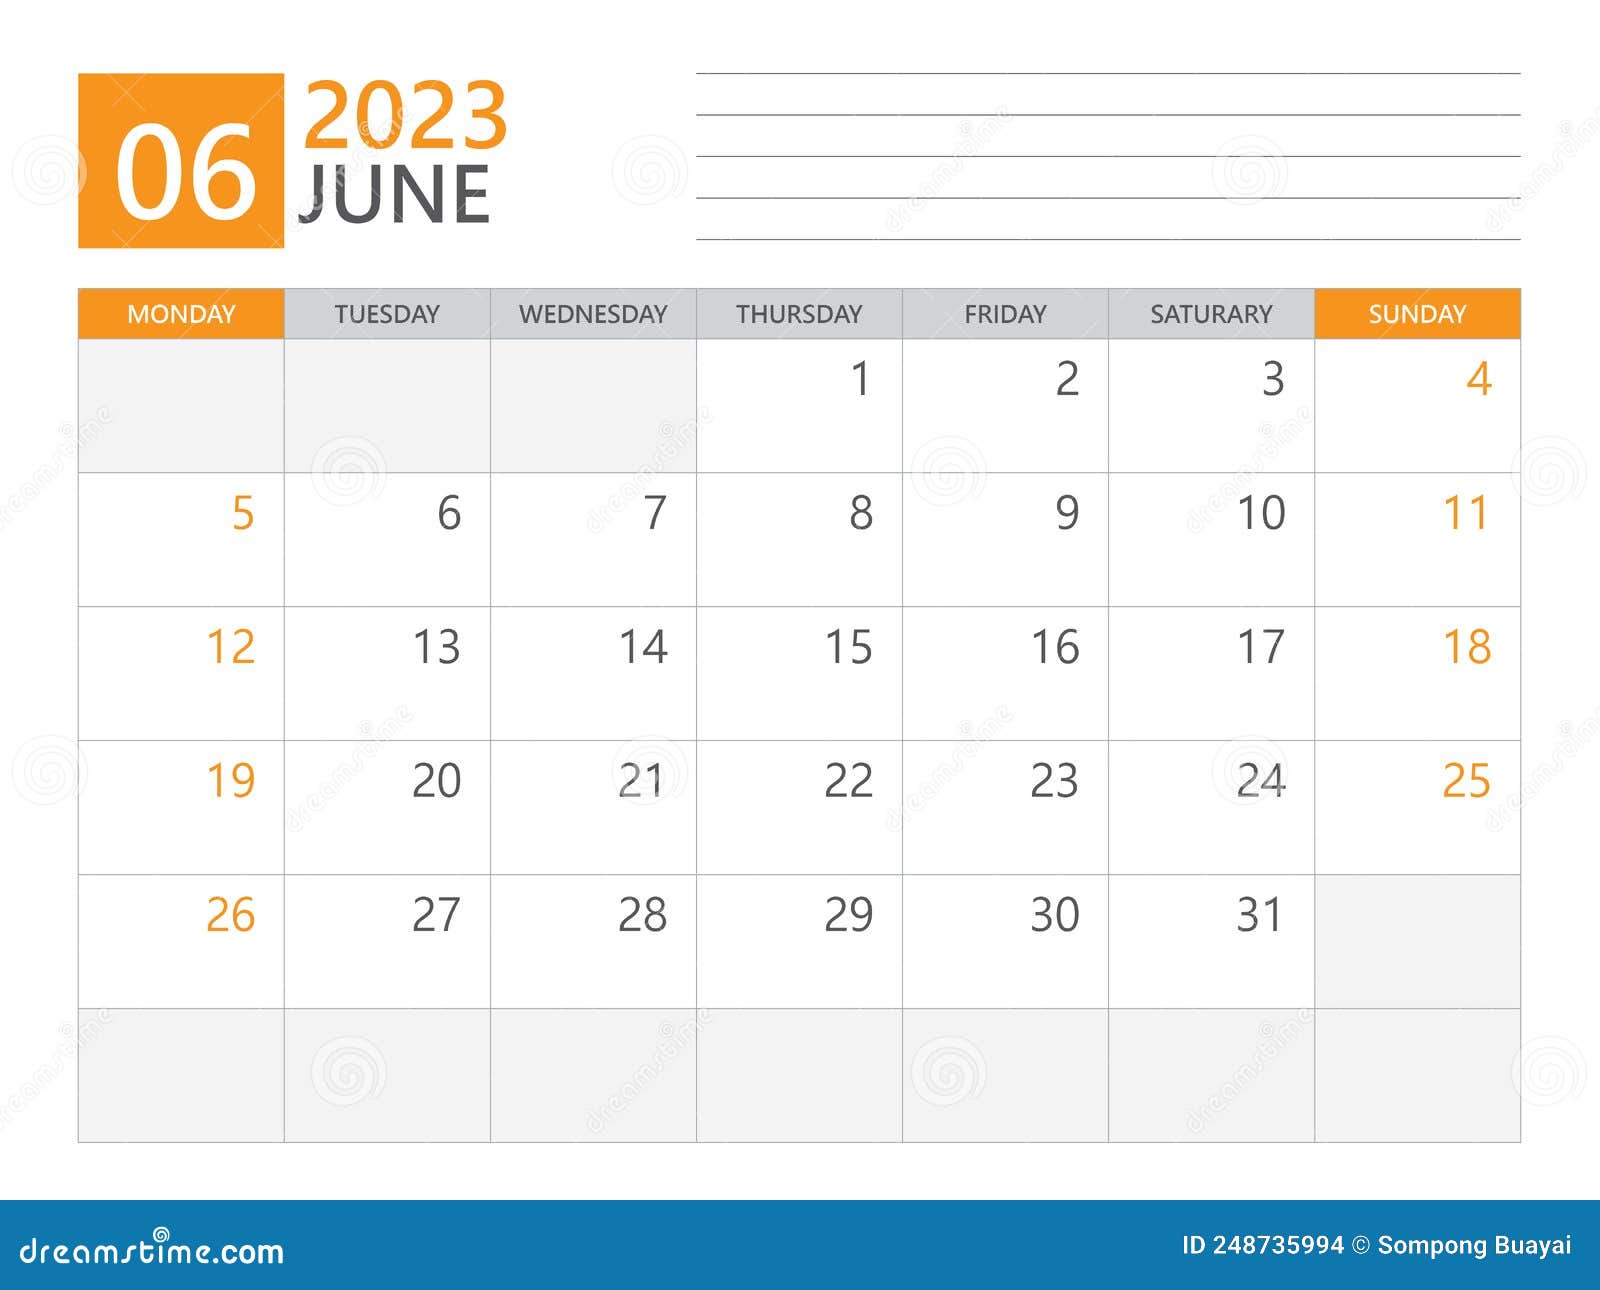 June 2023 Template, Calendar Planner 2023, Week Start on Monday, Desk